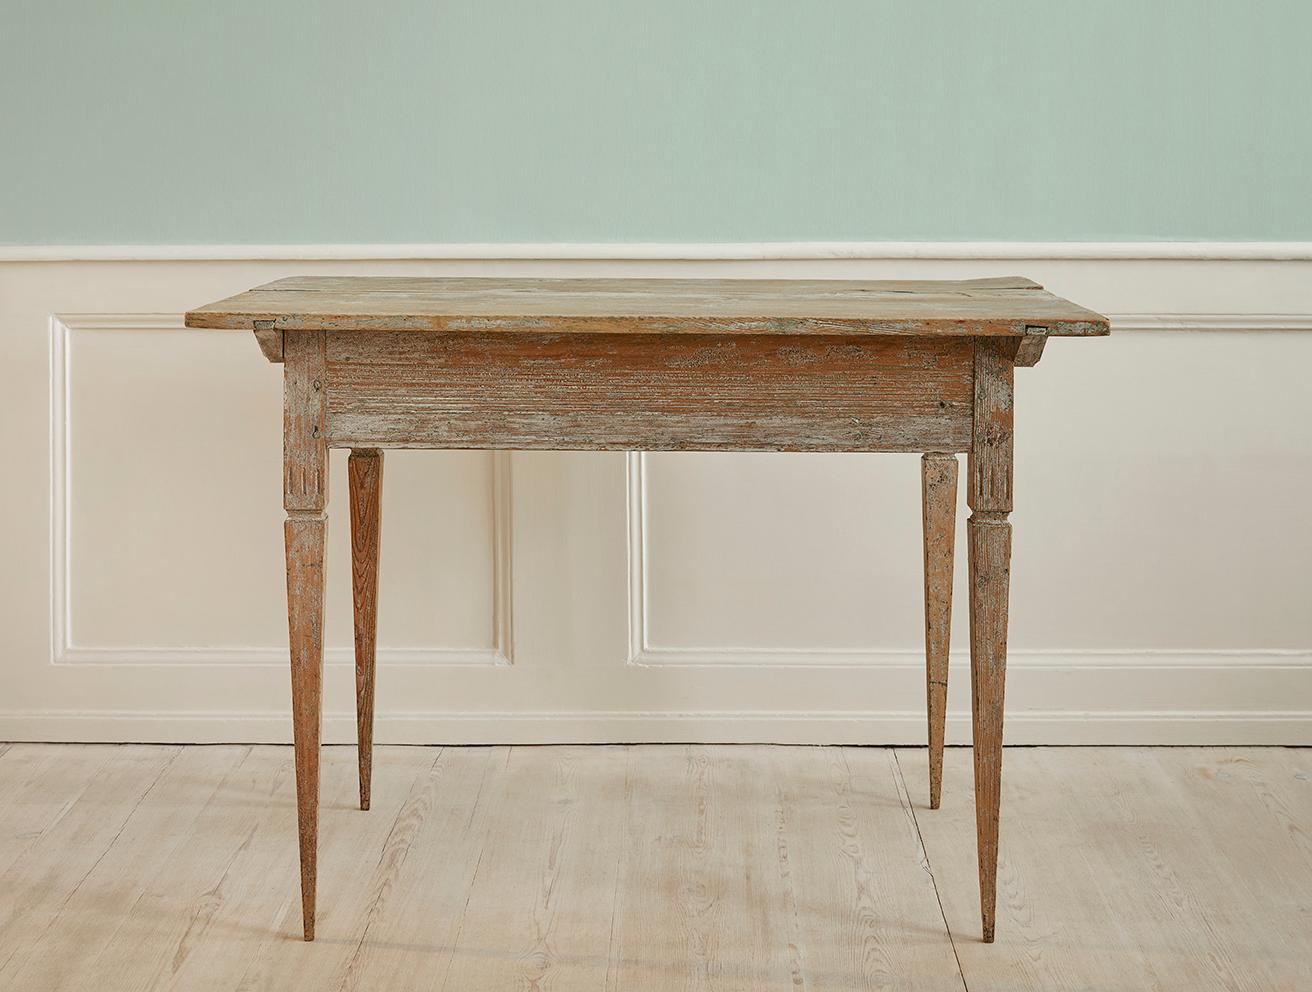 Schweden, Ende des 18. Jahrhunderts.

Tisch aus gustavianischem Kiefernholz mit Weiß- und Grüntönen.

Maße: H 76 x B 108 x T 69 cm.